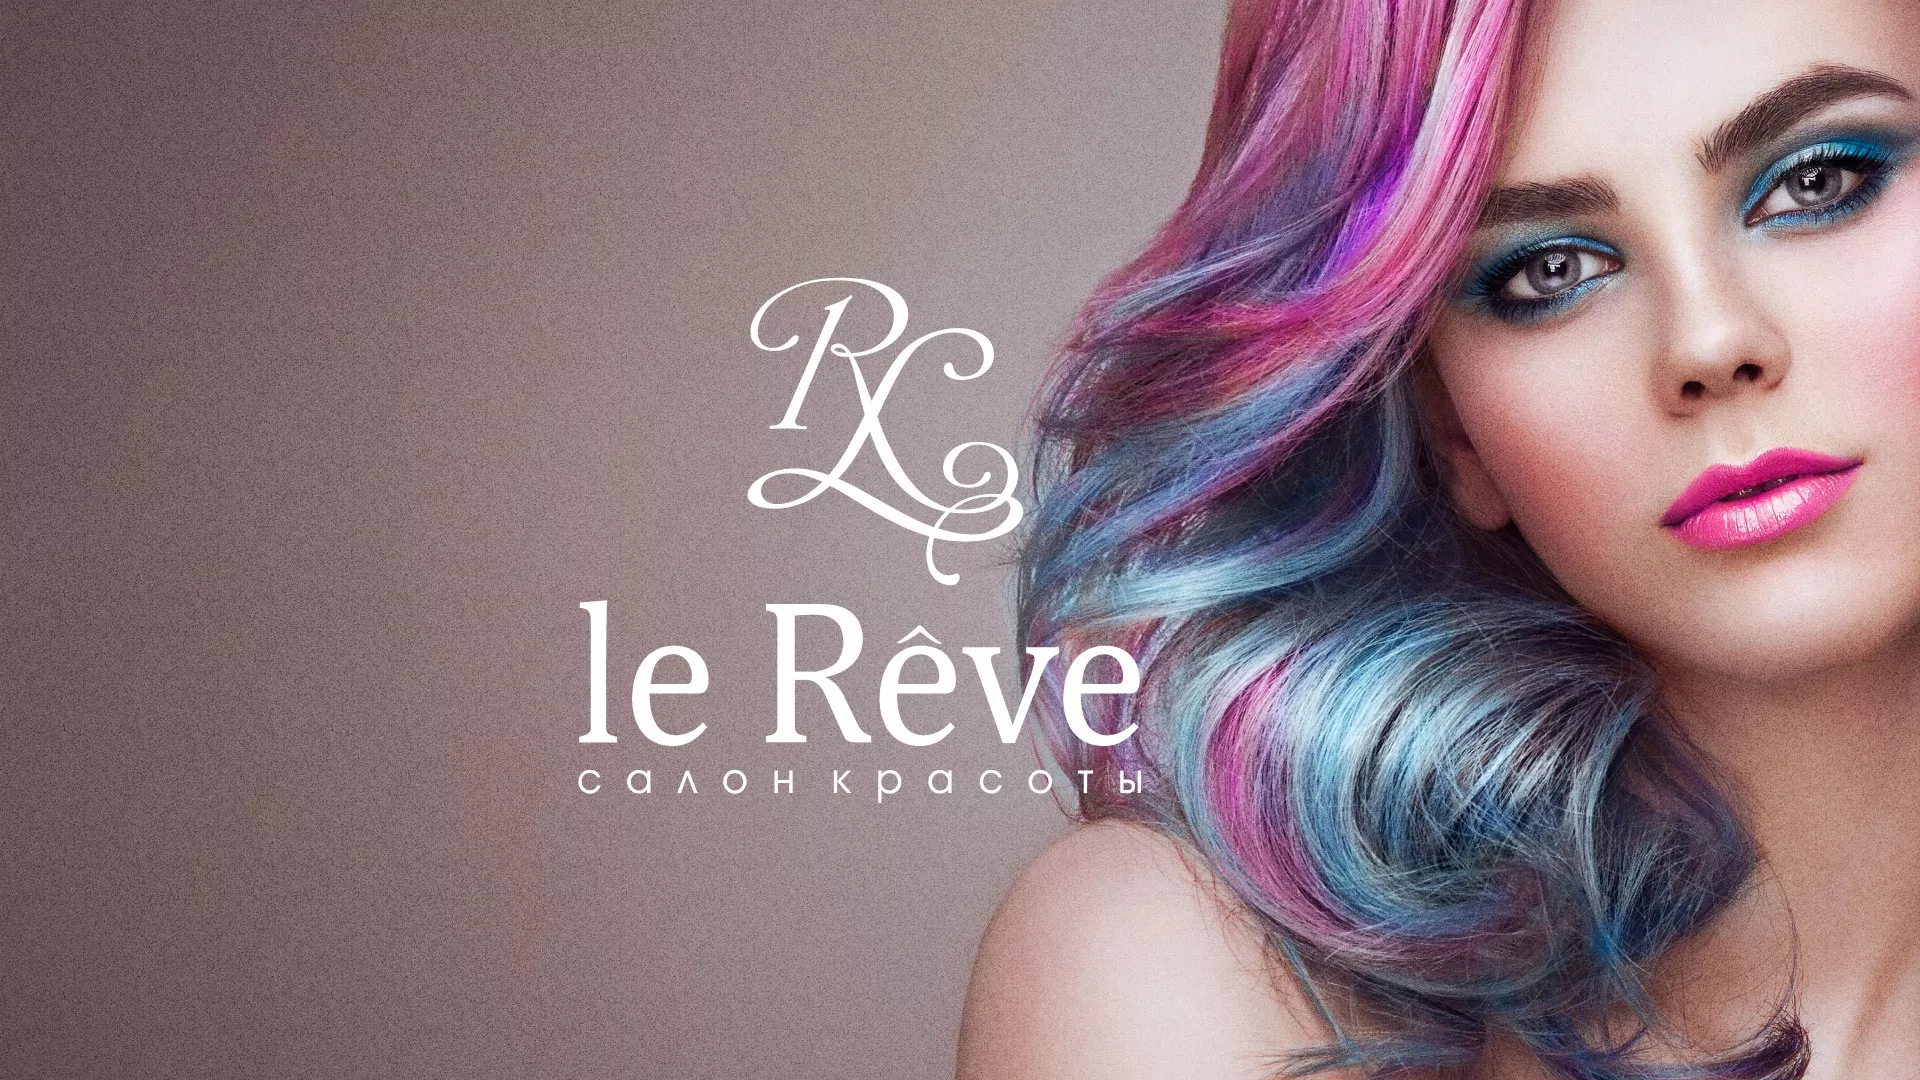 Создание сайта для салона красоты «Le Reve» в Фрязино